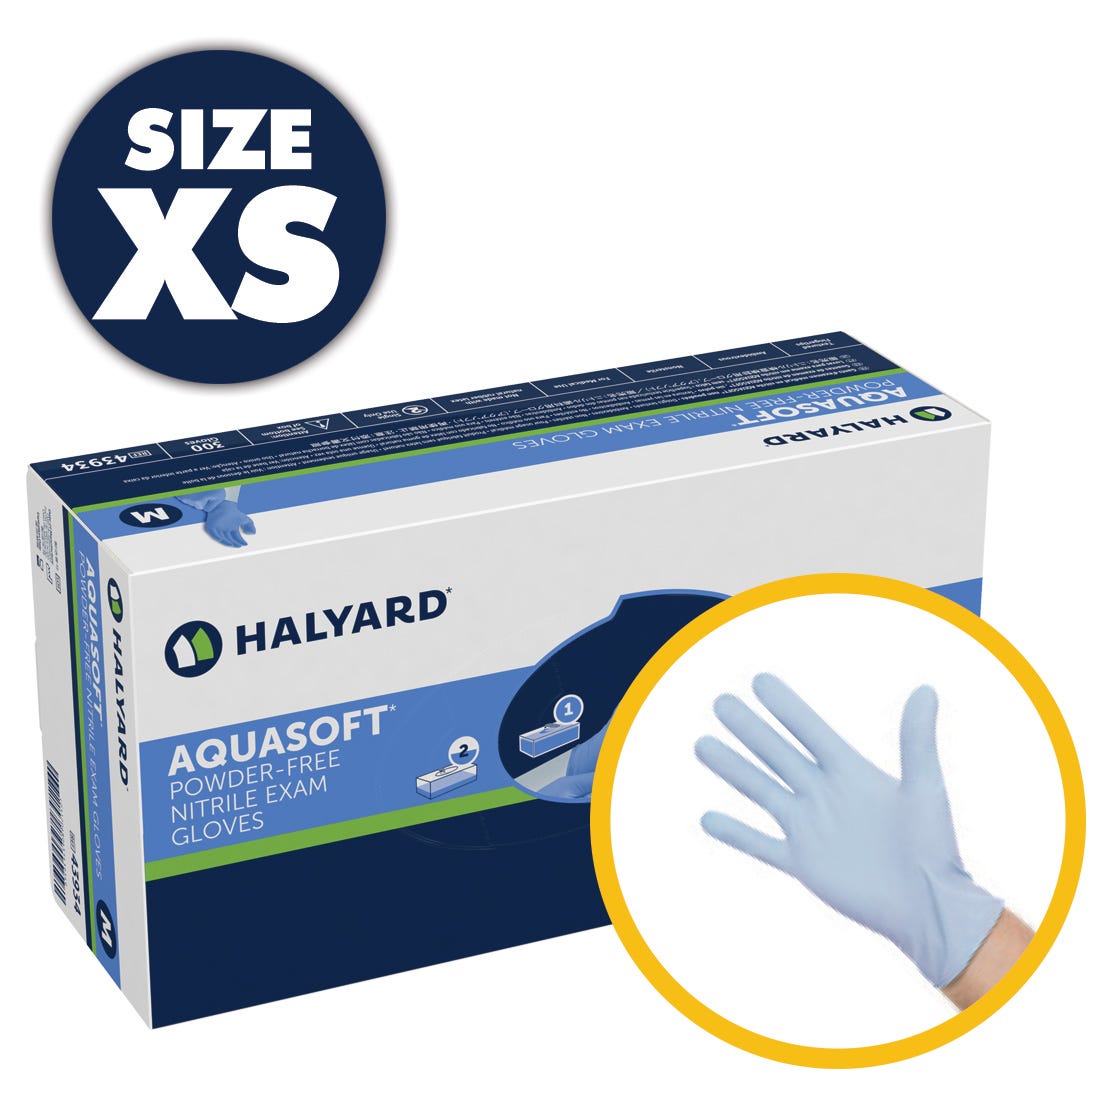 AQUASOFT Nitrile Exam Gloves- X-Small, Poqder-Free- 300/Box